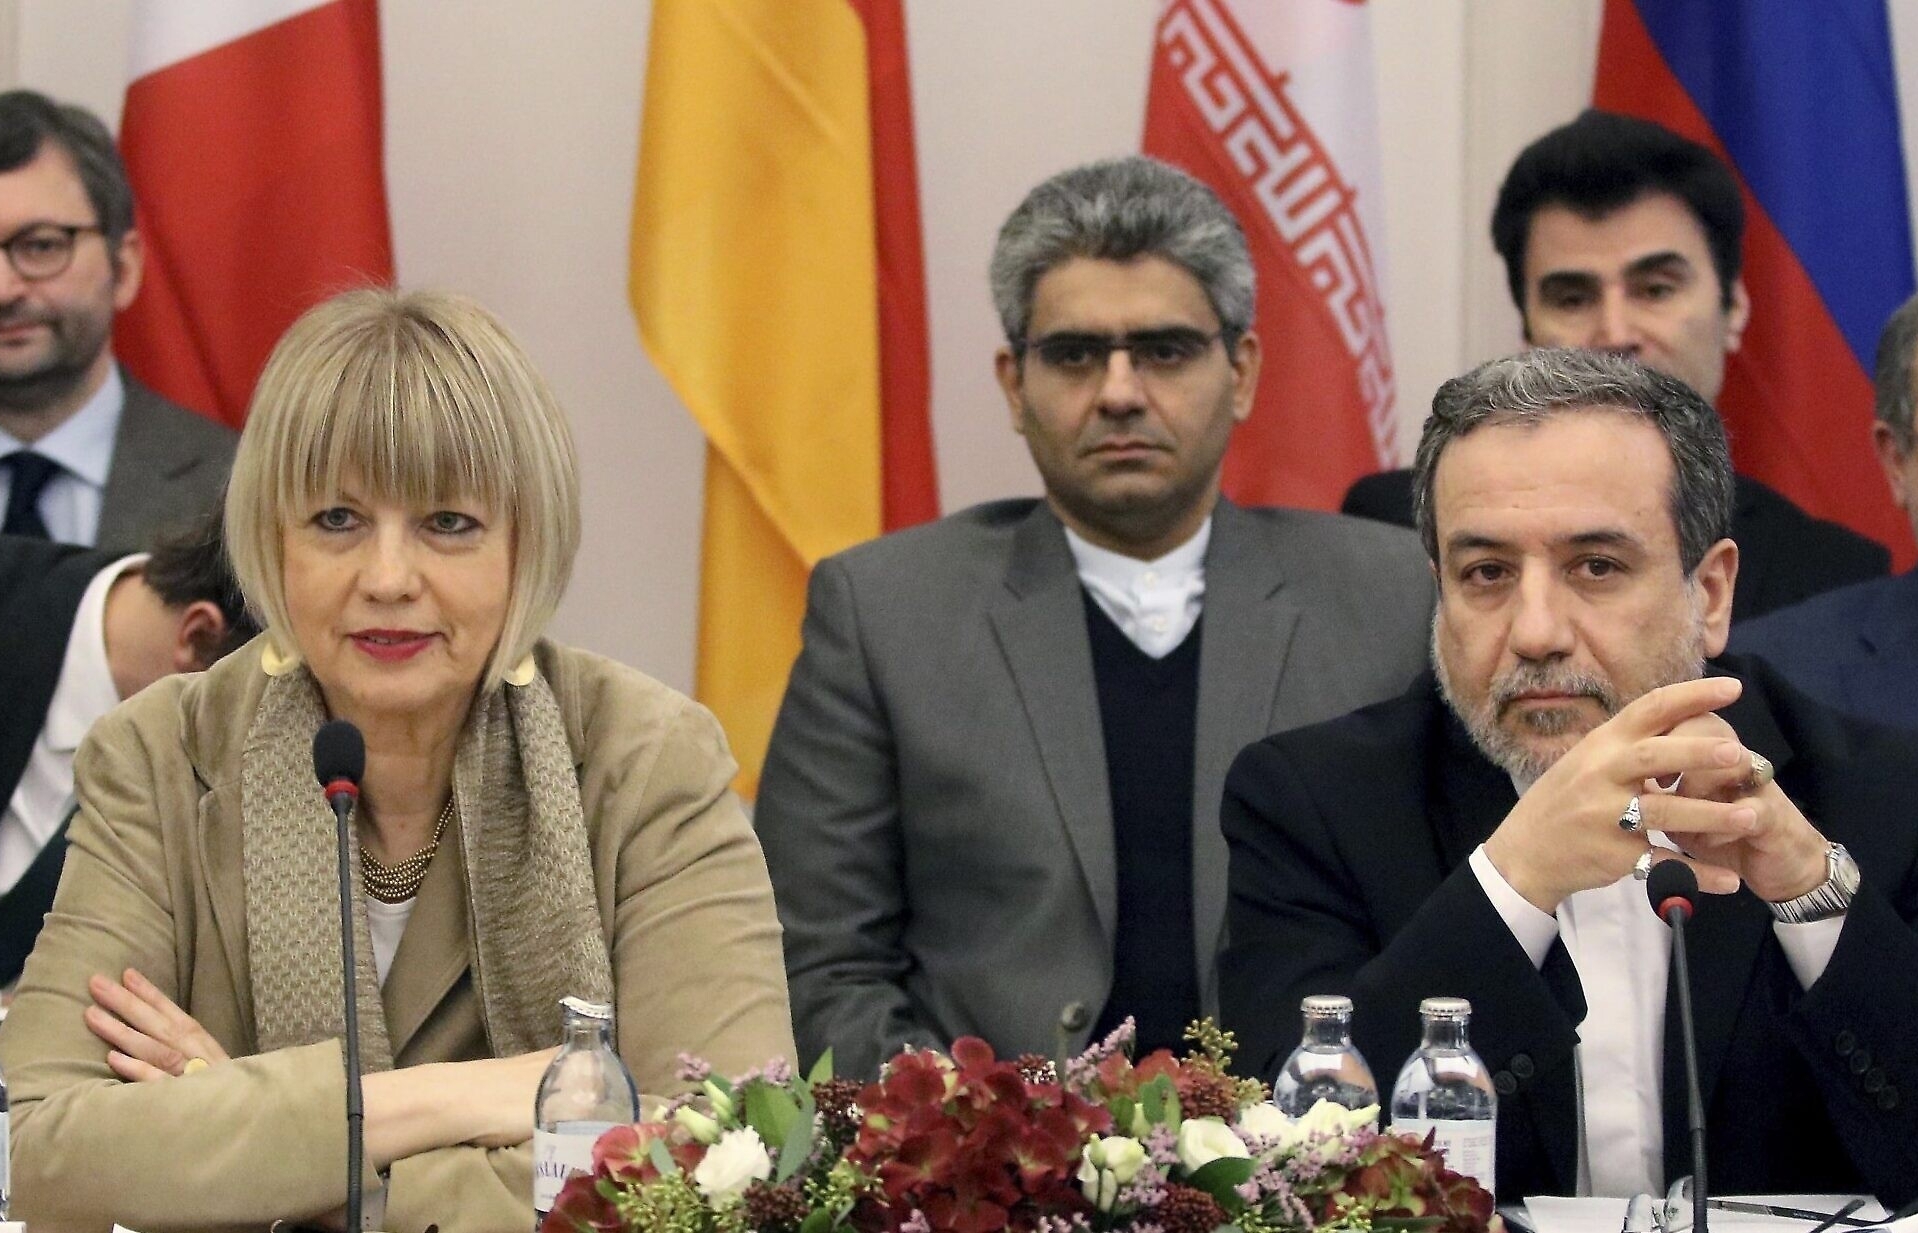 Quốc tế kêu gọi Iran “chớ manh động”